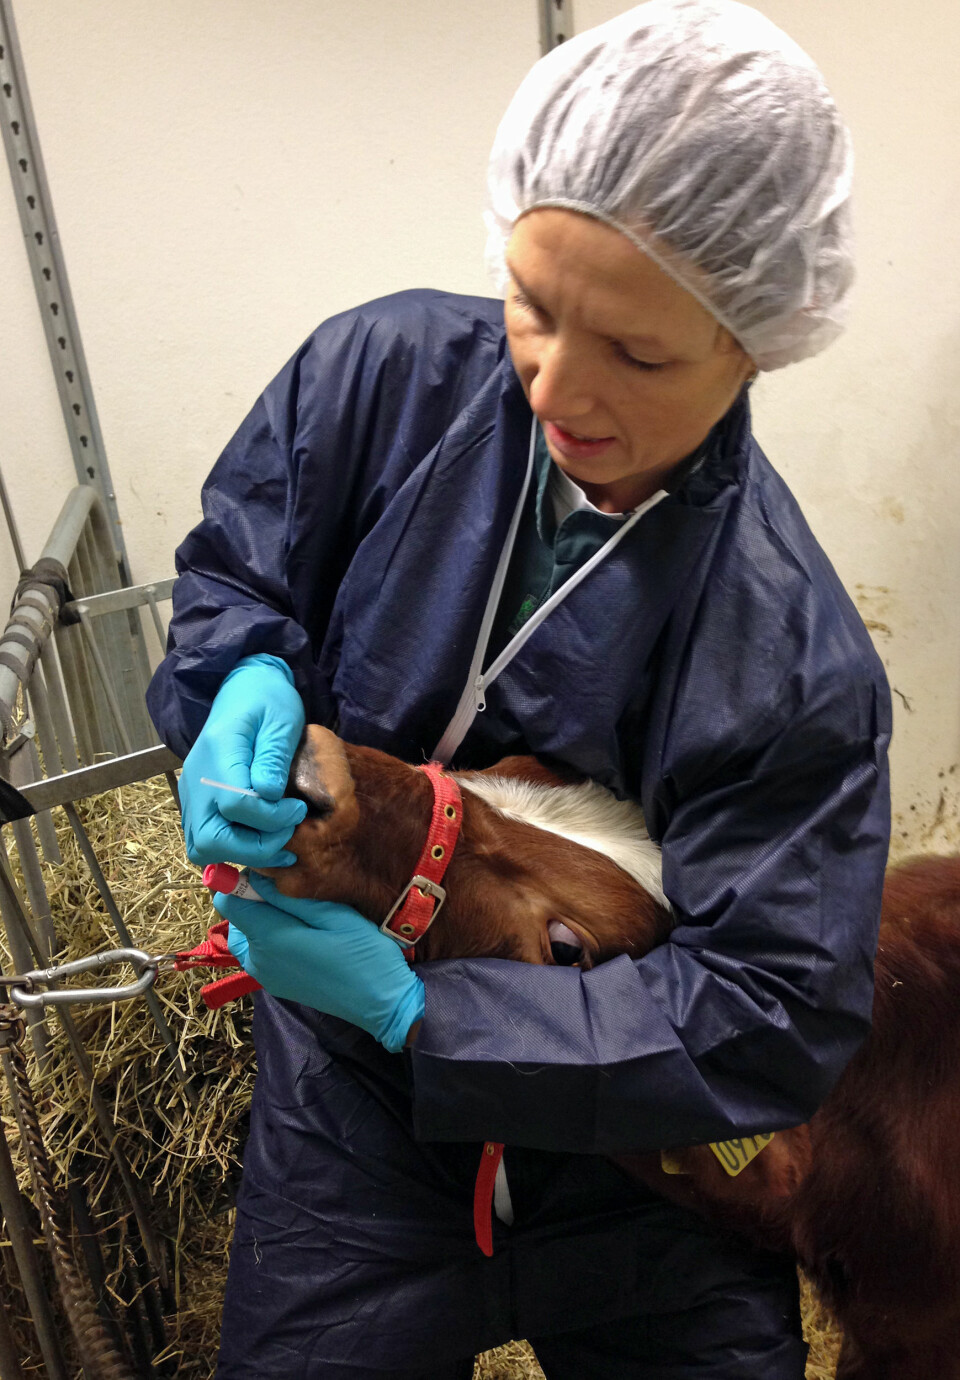 Veterinær Thea Blystad Klem ved NMBU samarbeider med Veterinærinstituttet om å finne virus i nesa til kyr. Men også mennesker kan bære kuviruset i nesa. (Foto: Faisal Suhel)